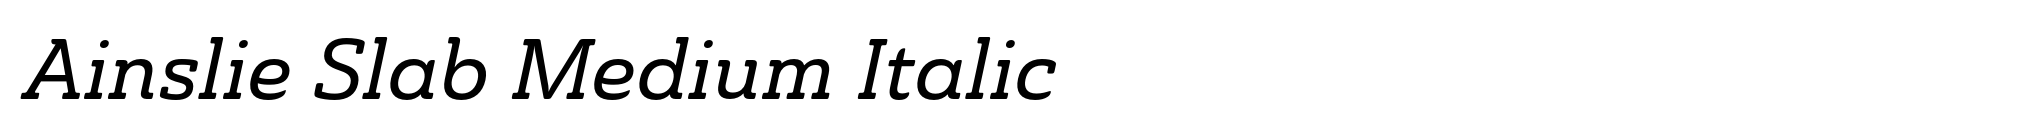 Ainslie Slab Medium Italic image